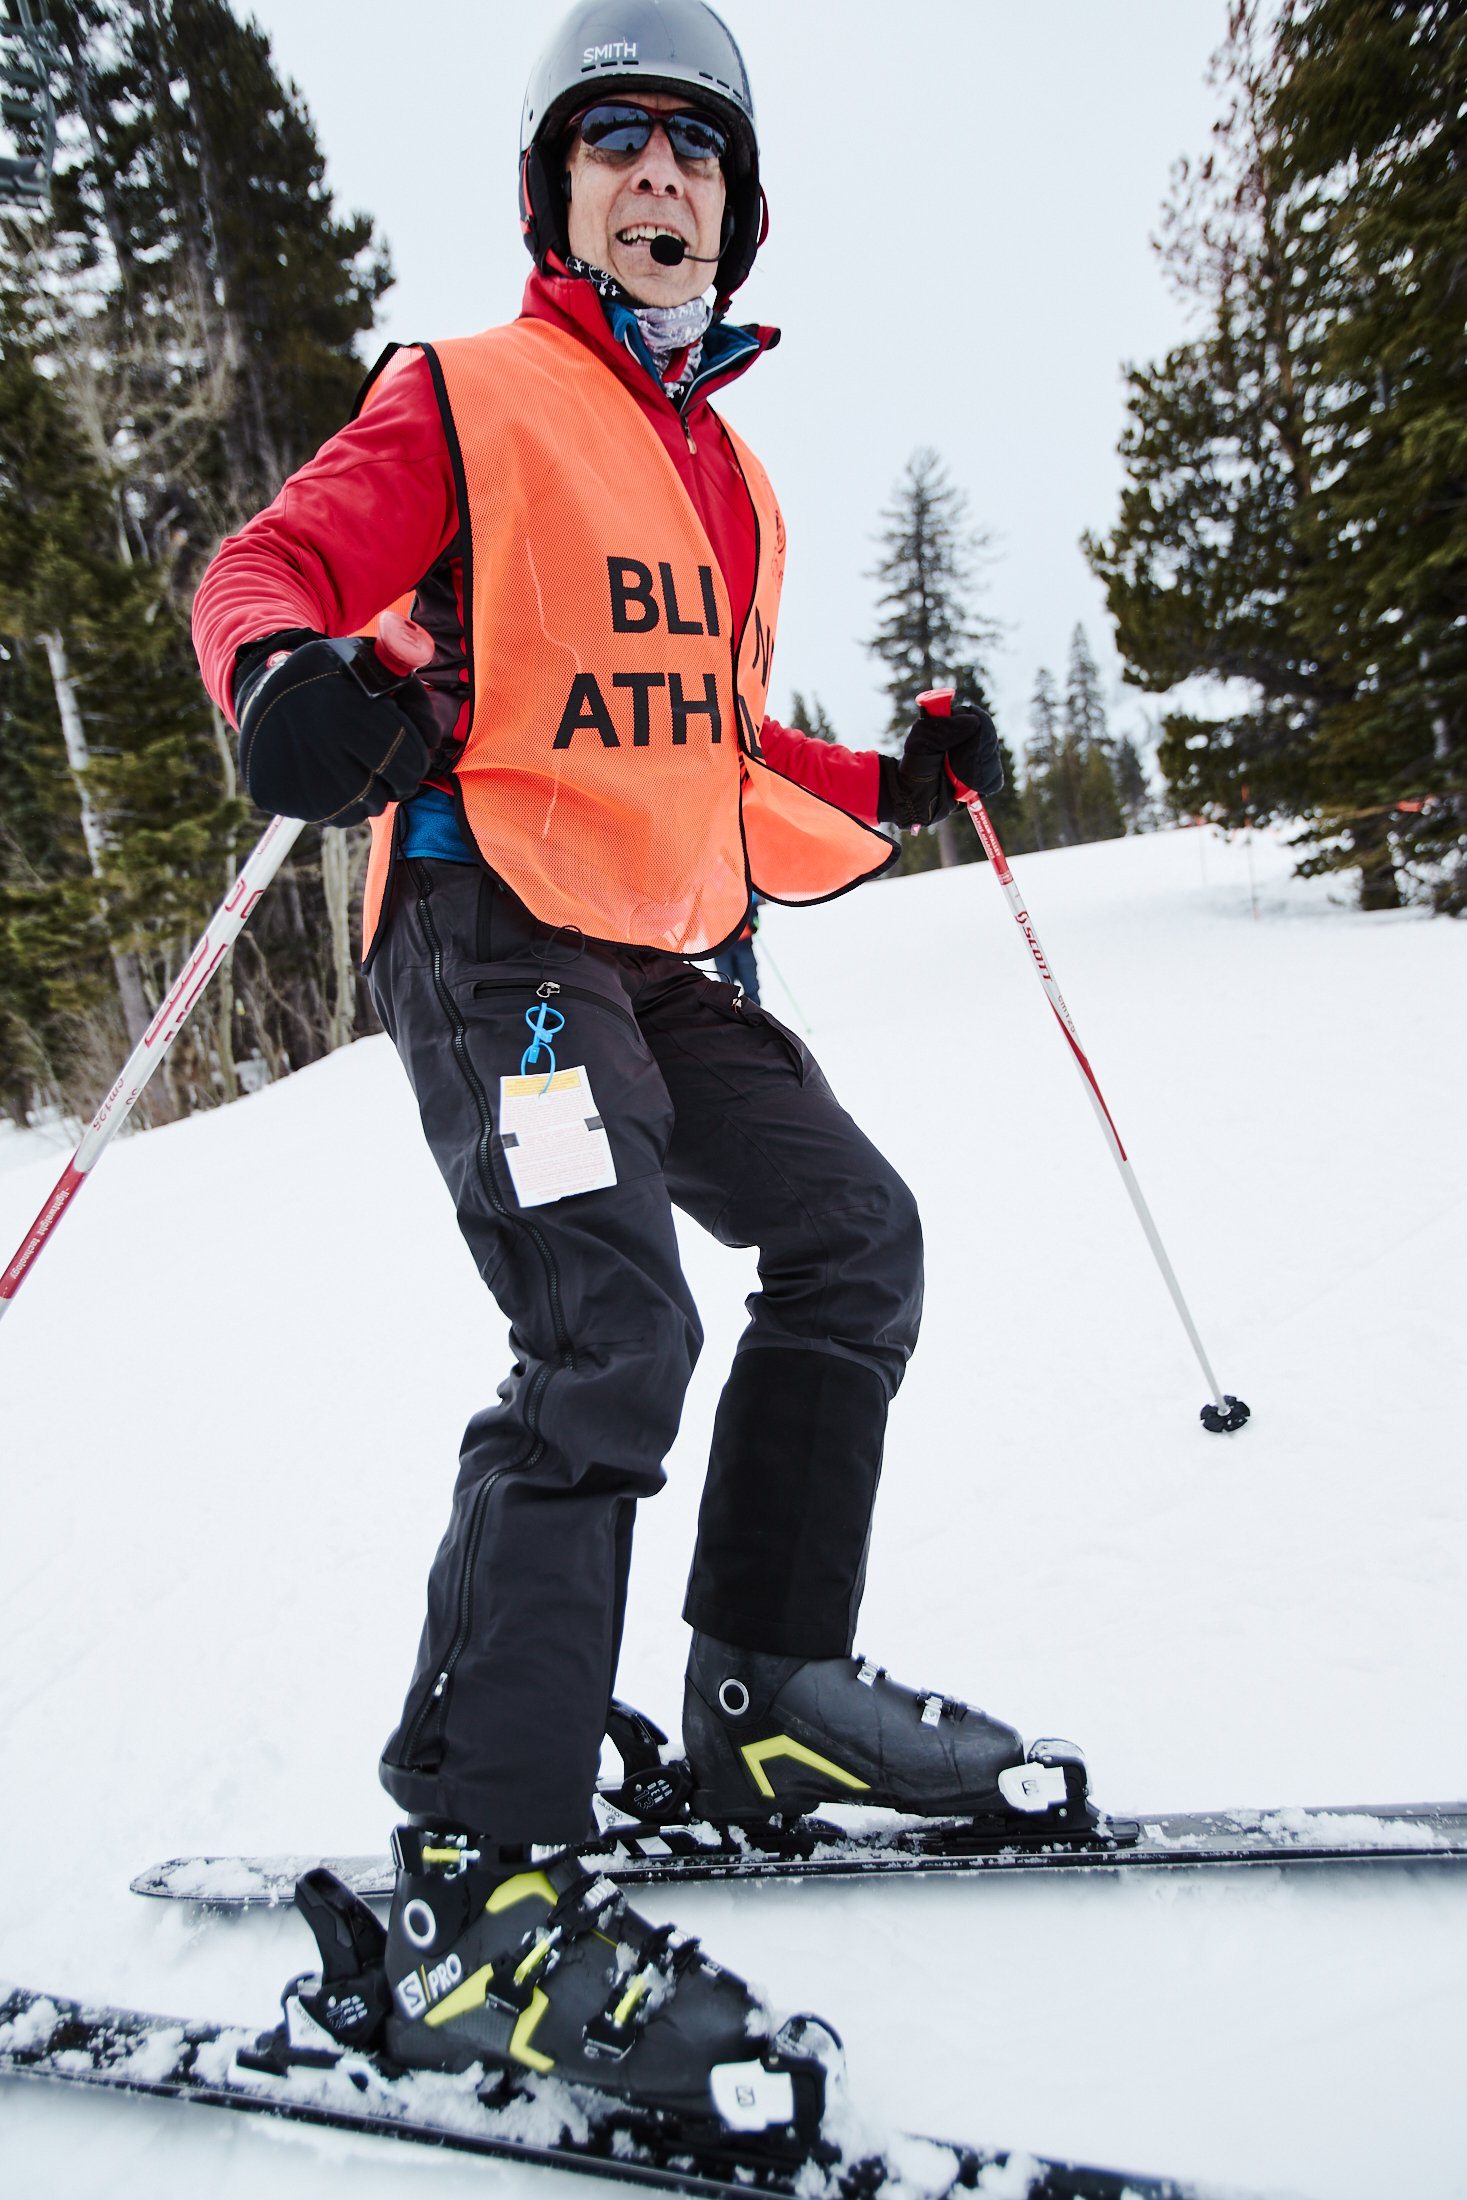 Walt Raineri, wearing a blind athlete vest, skis in Like Tahoe